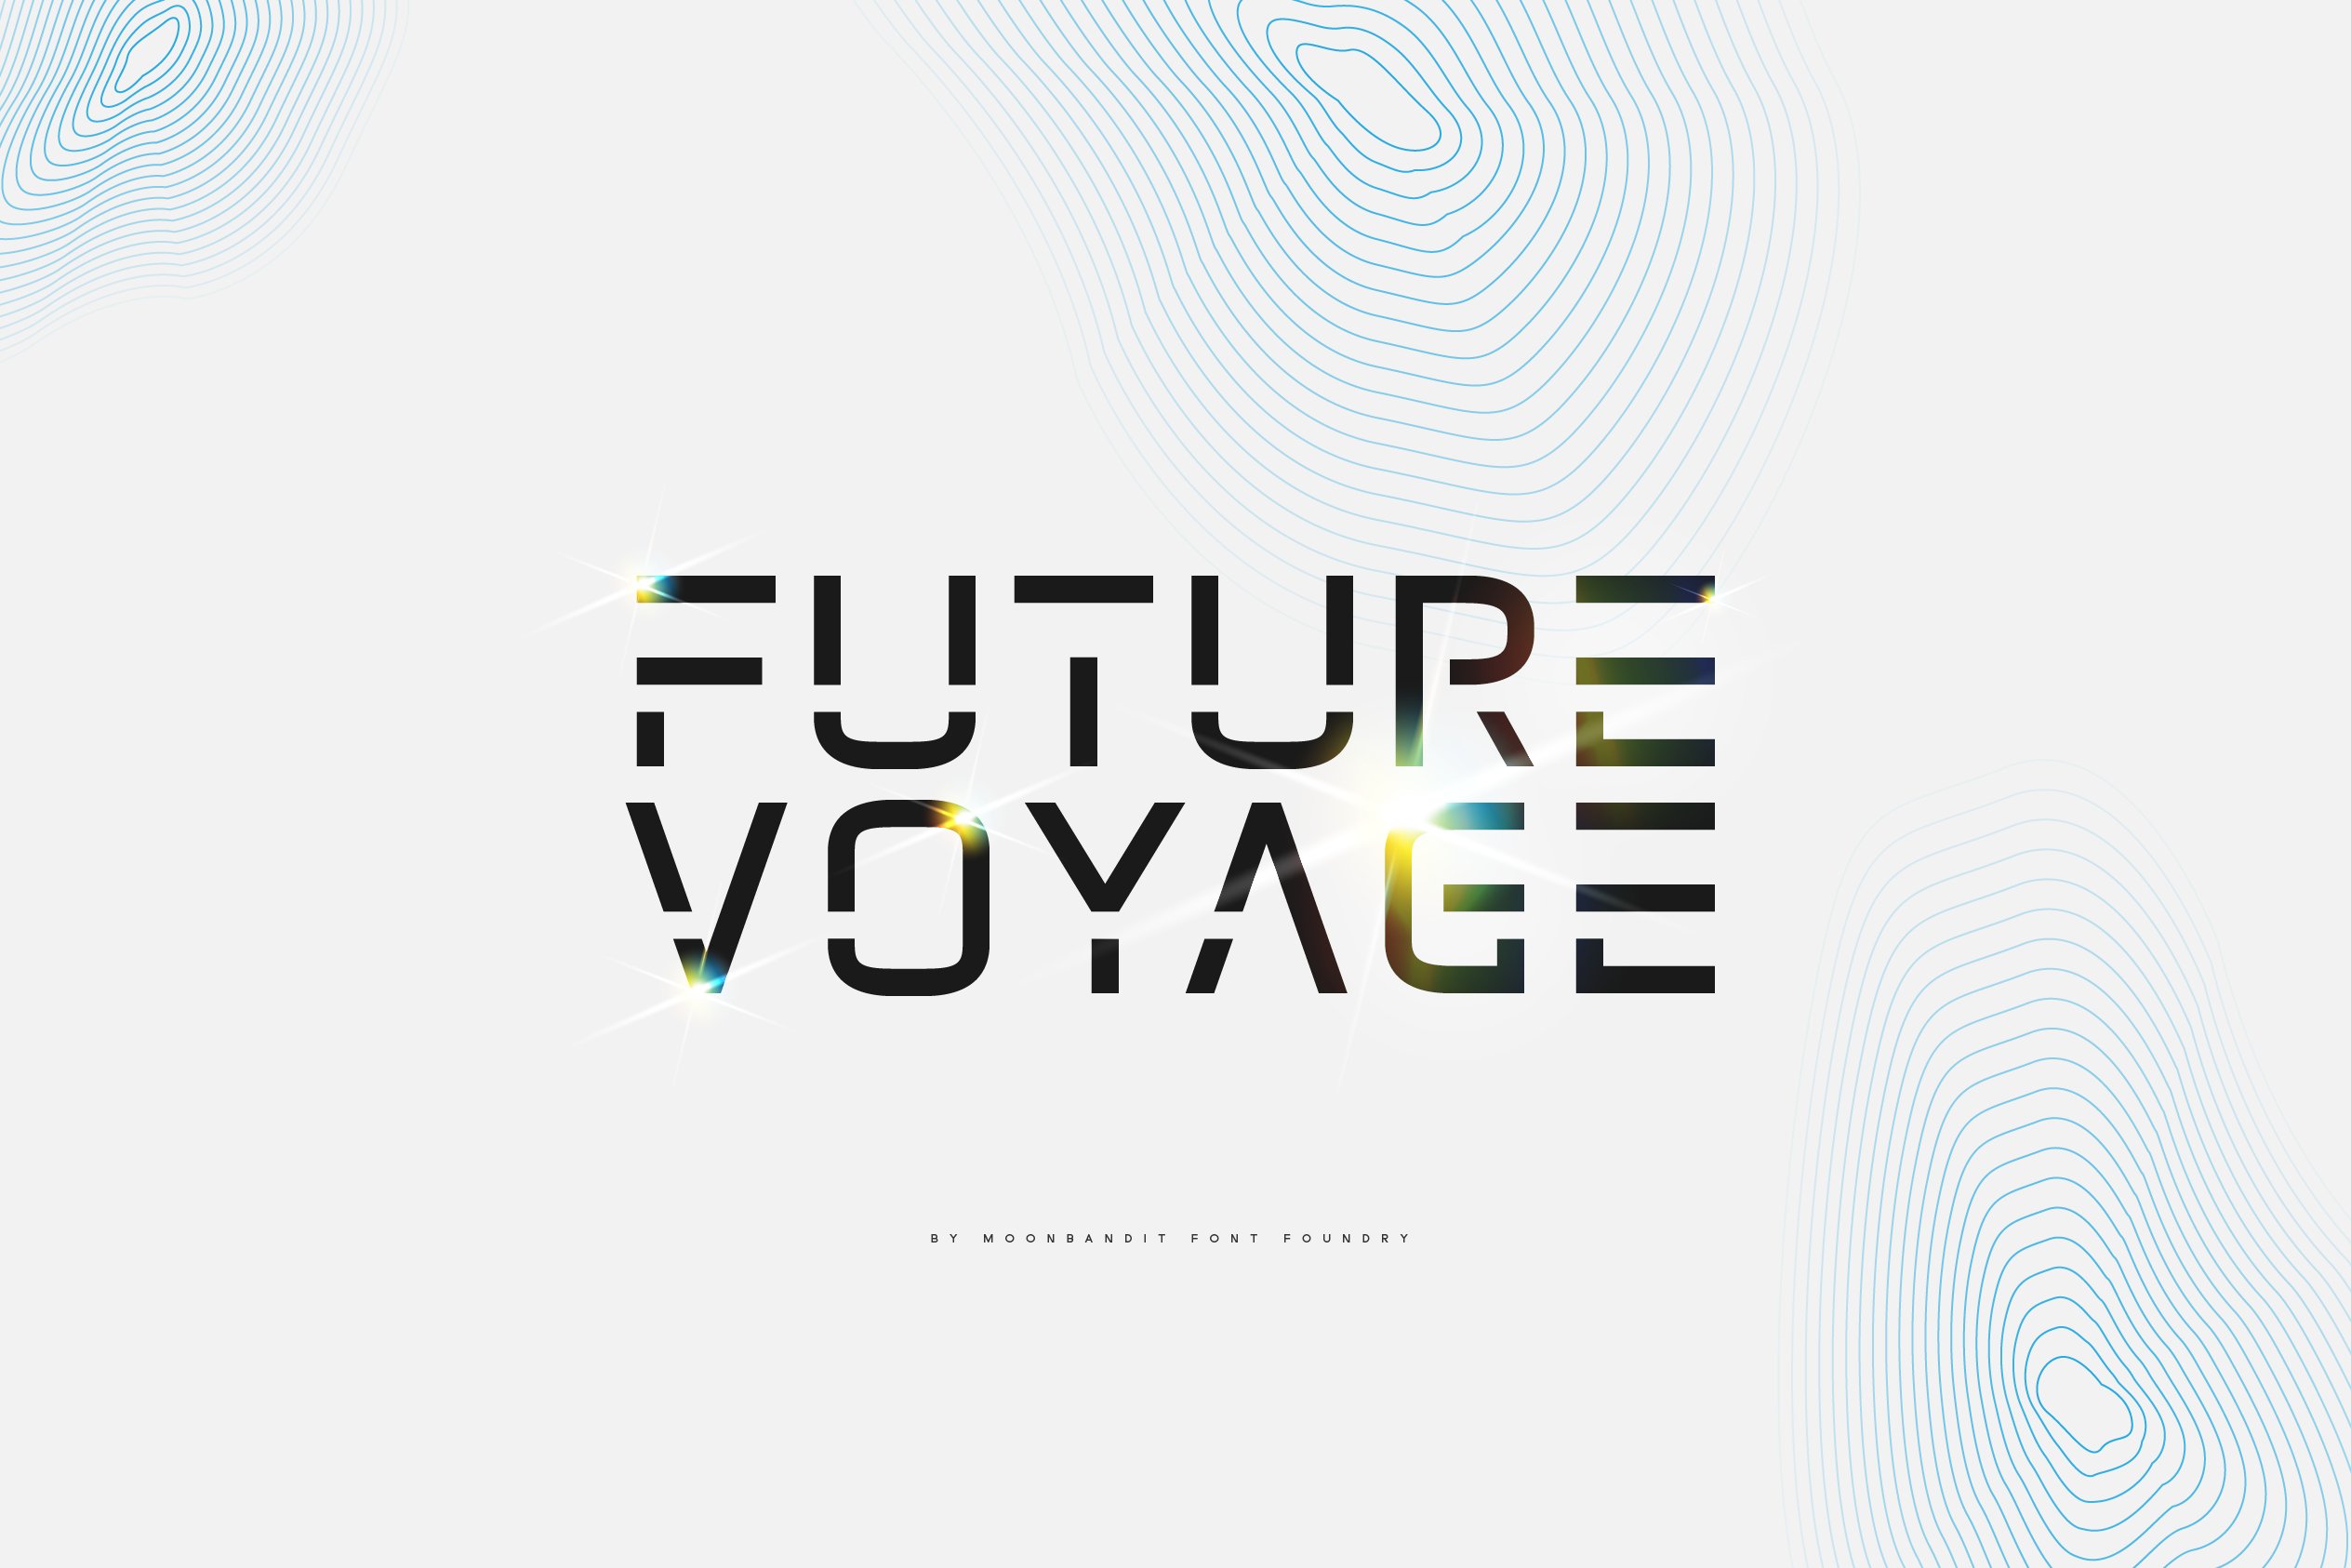 MBF Future Voyage - Futuristic font cover image.